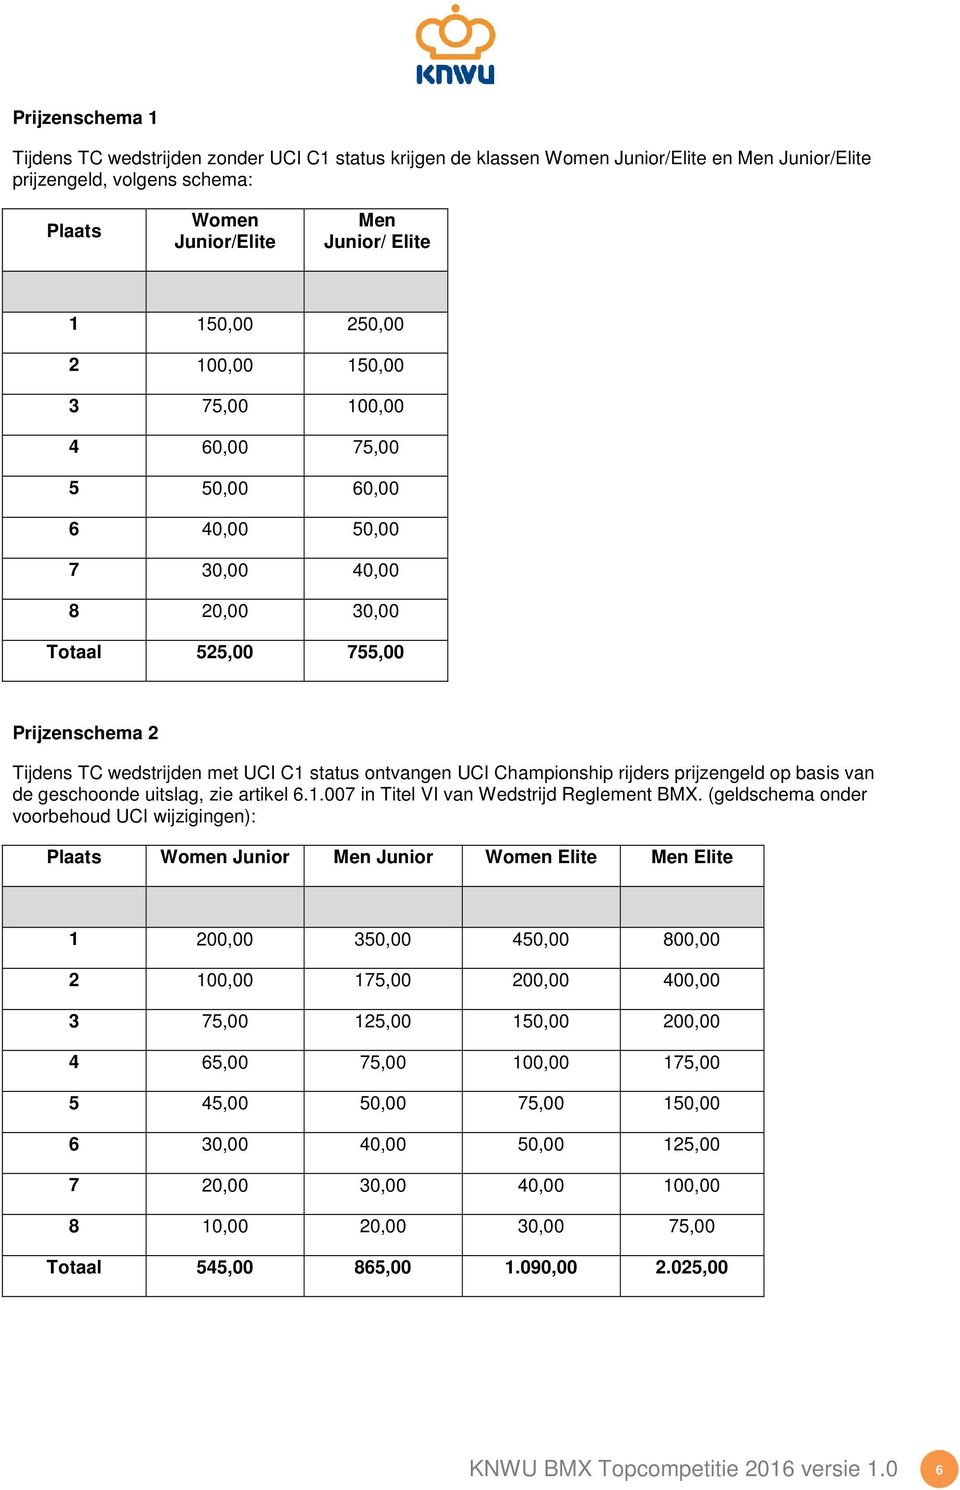 Championship rijders prijzengeld op basis van de geschoonde uitslag, zie artikel 6.1.007 in Titel VI van Wedstrijd Reglement BMX.